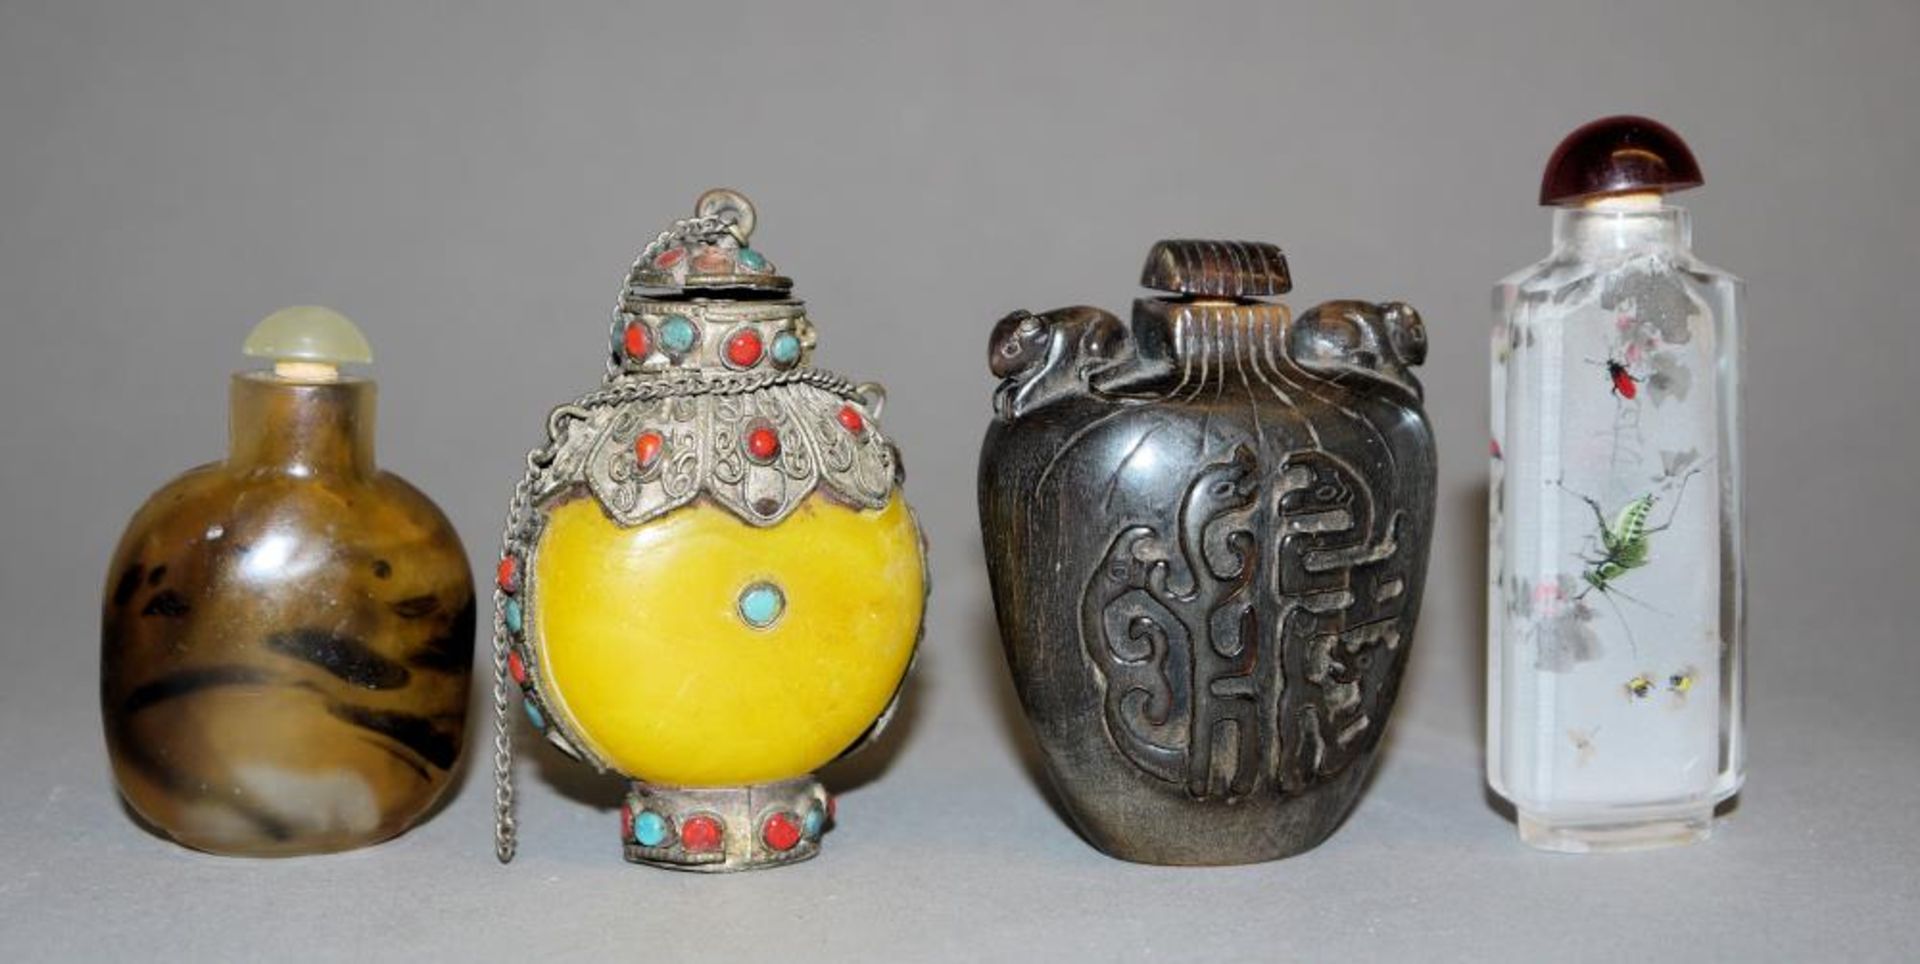 Vier chinesische Snuffbottle, 19. & 20. Jh. Flasche in Achat-Glas, 19. Jh., H 6 cm, Flasche aus